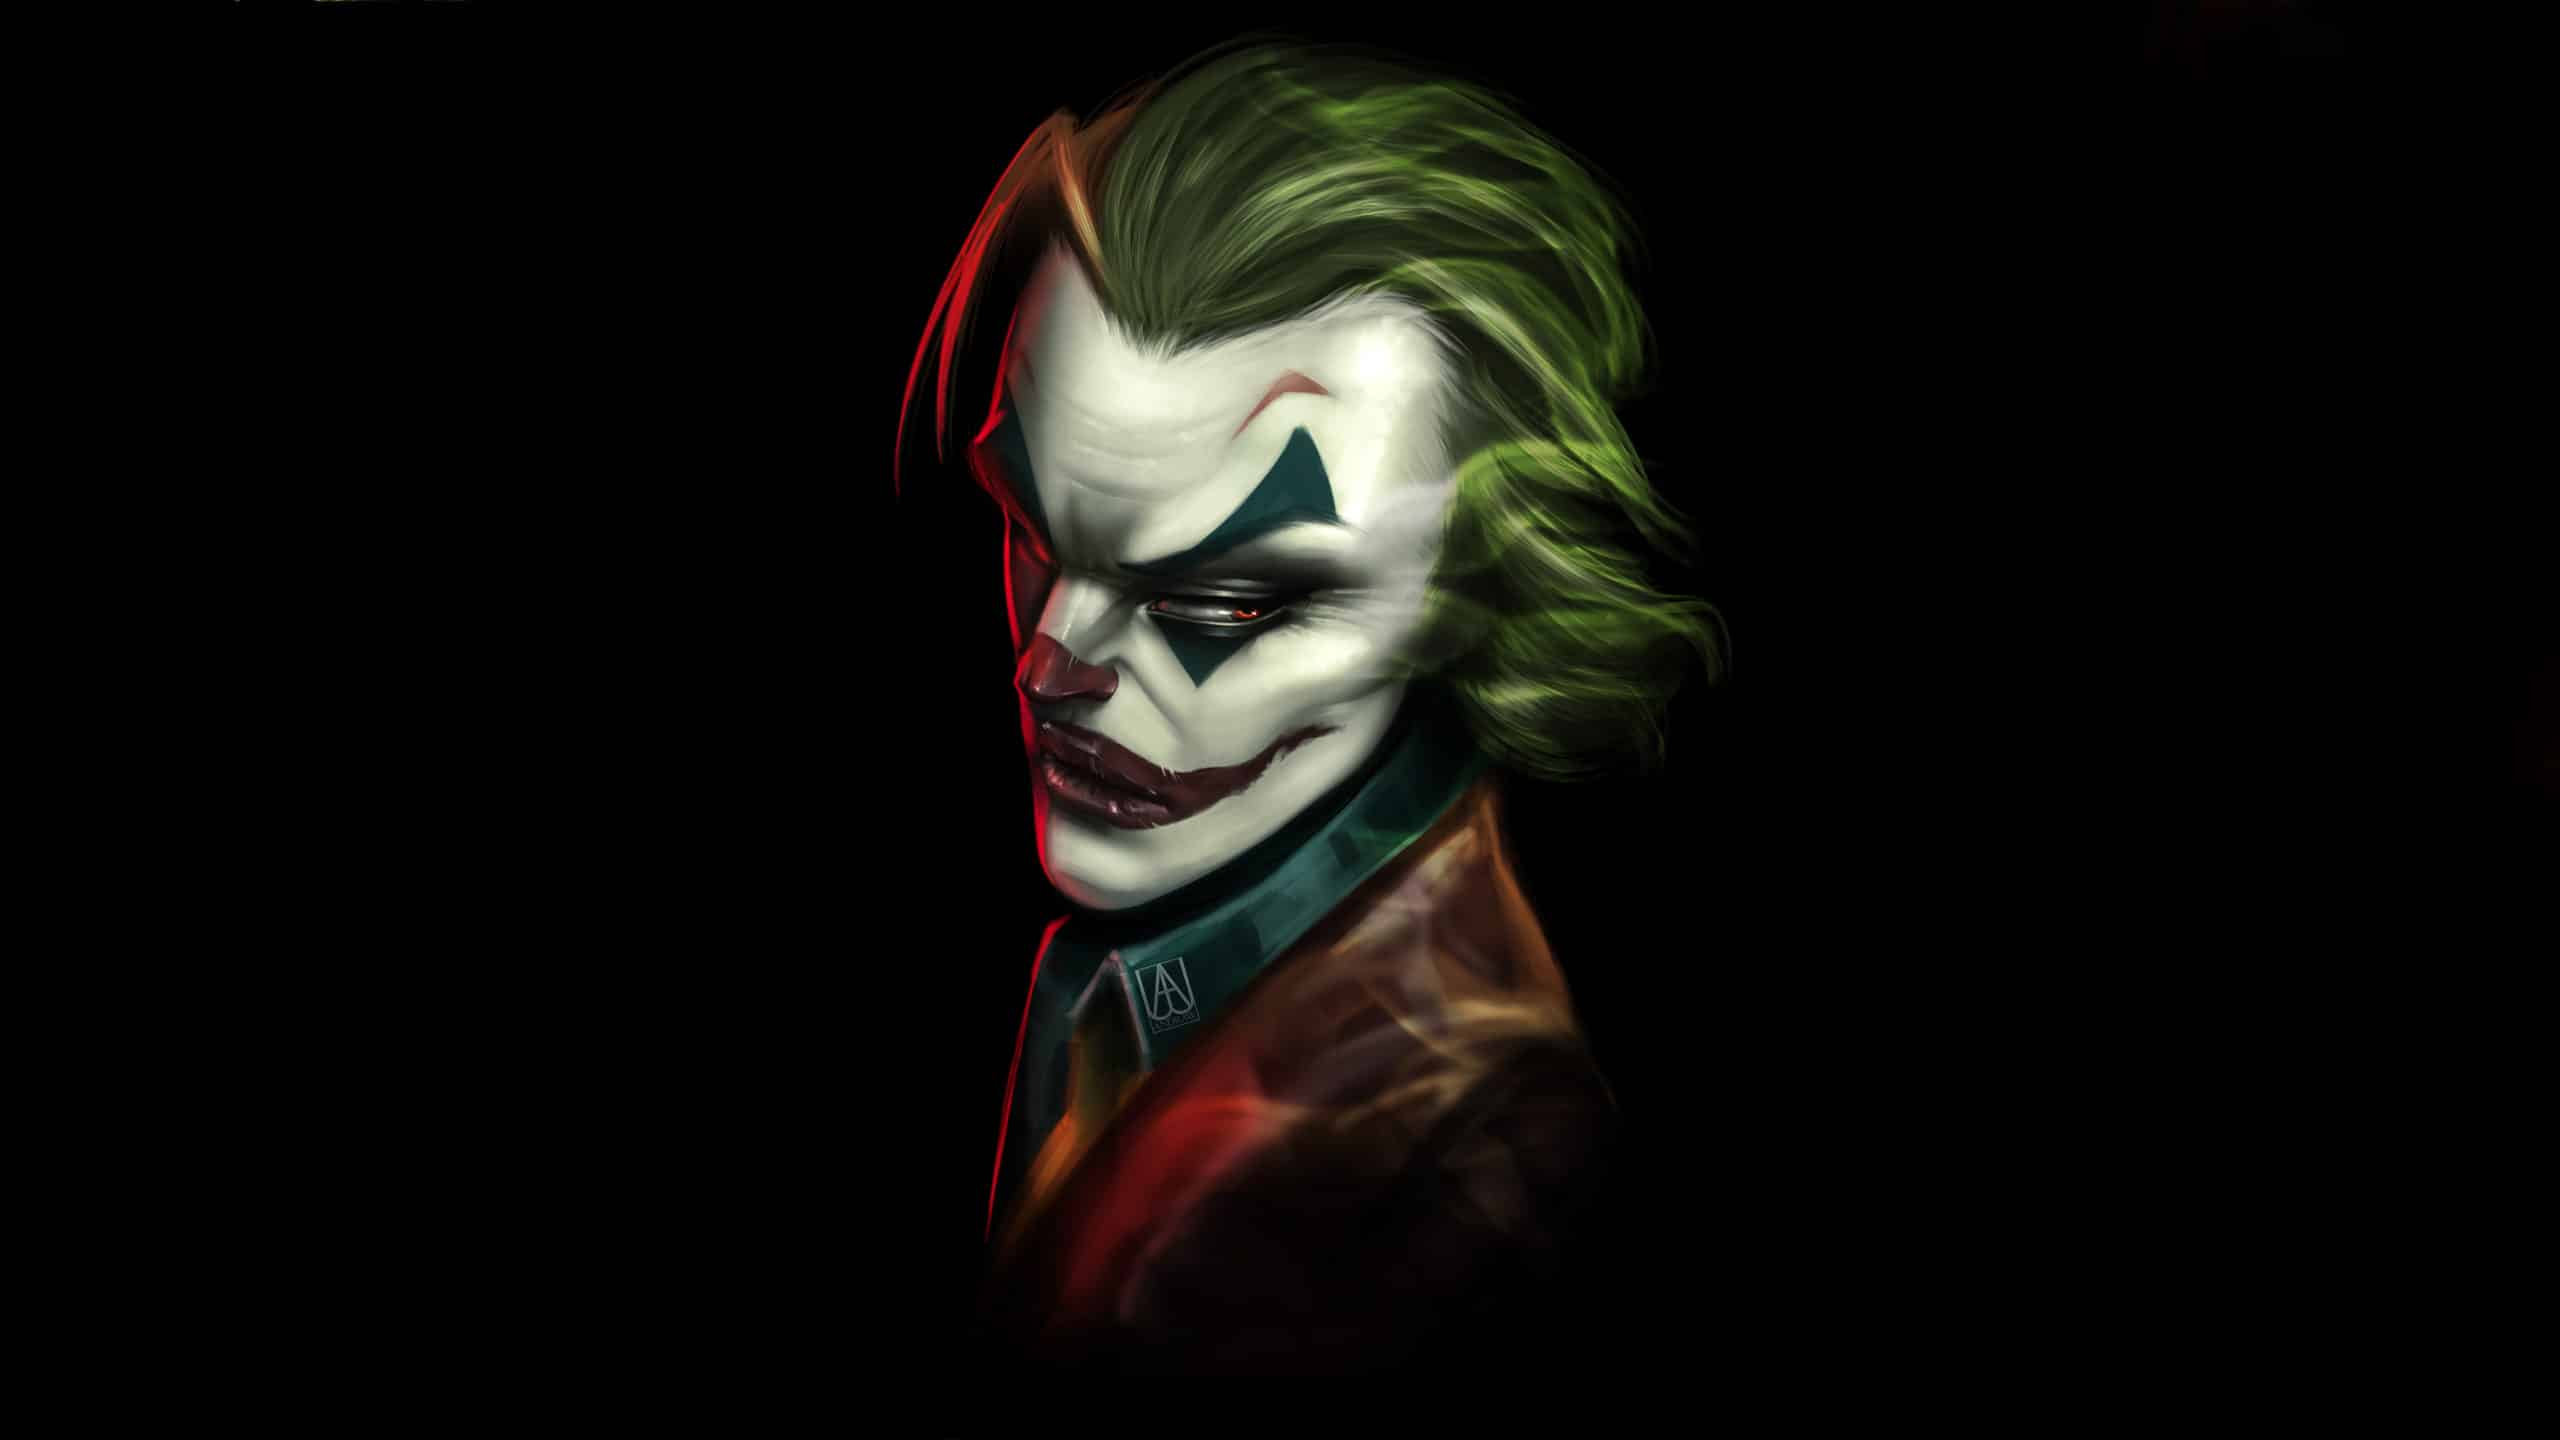 Hình Joker sắc nét ngầu lòi